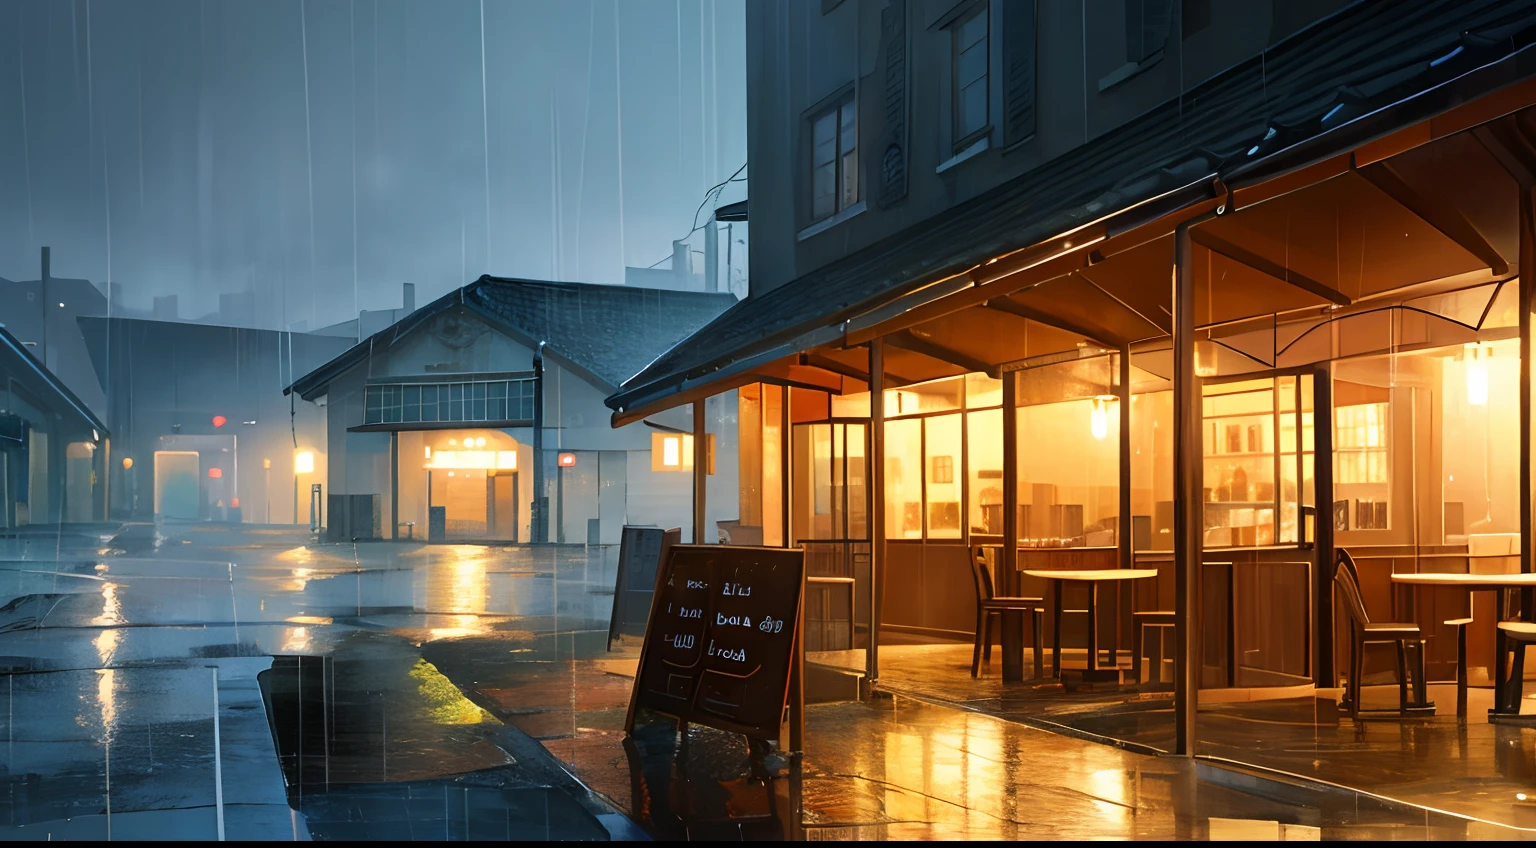 кафе в дождливый день иллюстрация графика высшего качества пейзаж дождь дождливый день теплый свет кафе